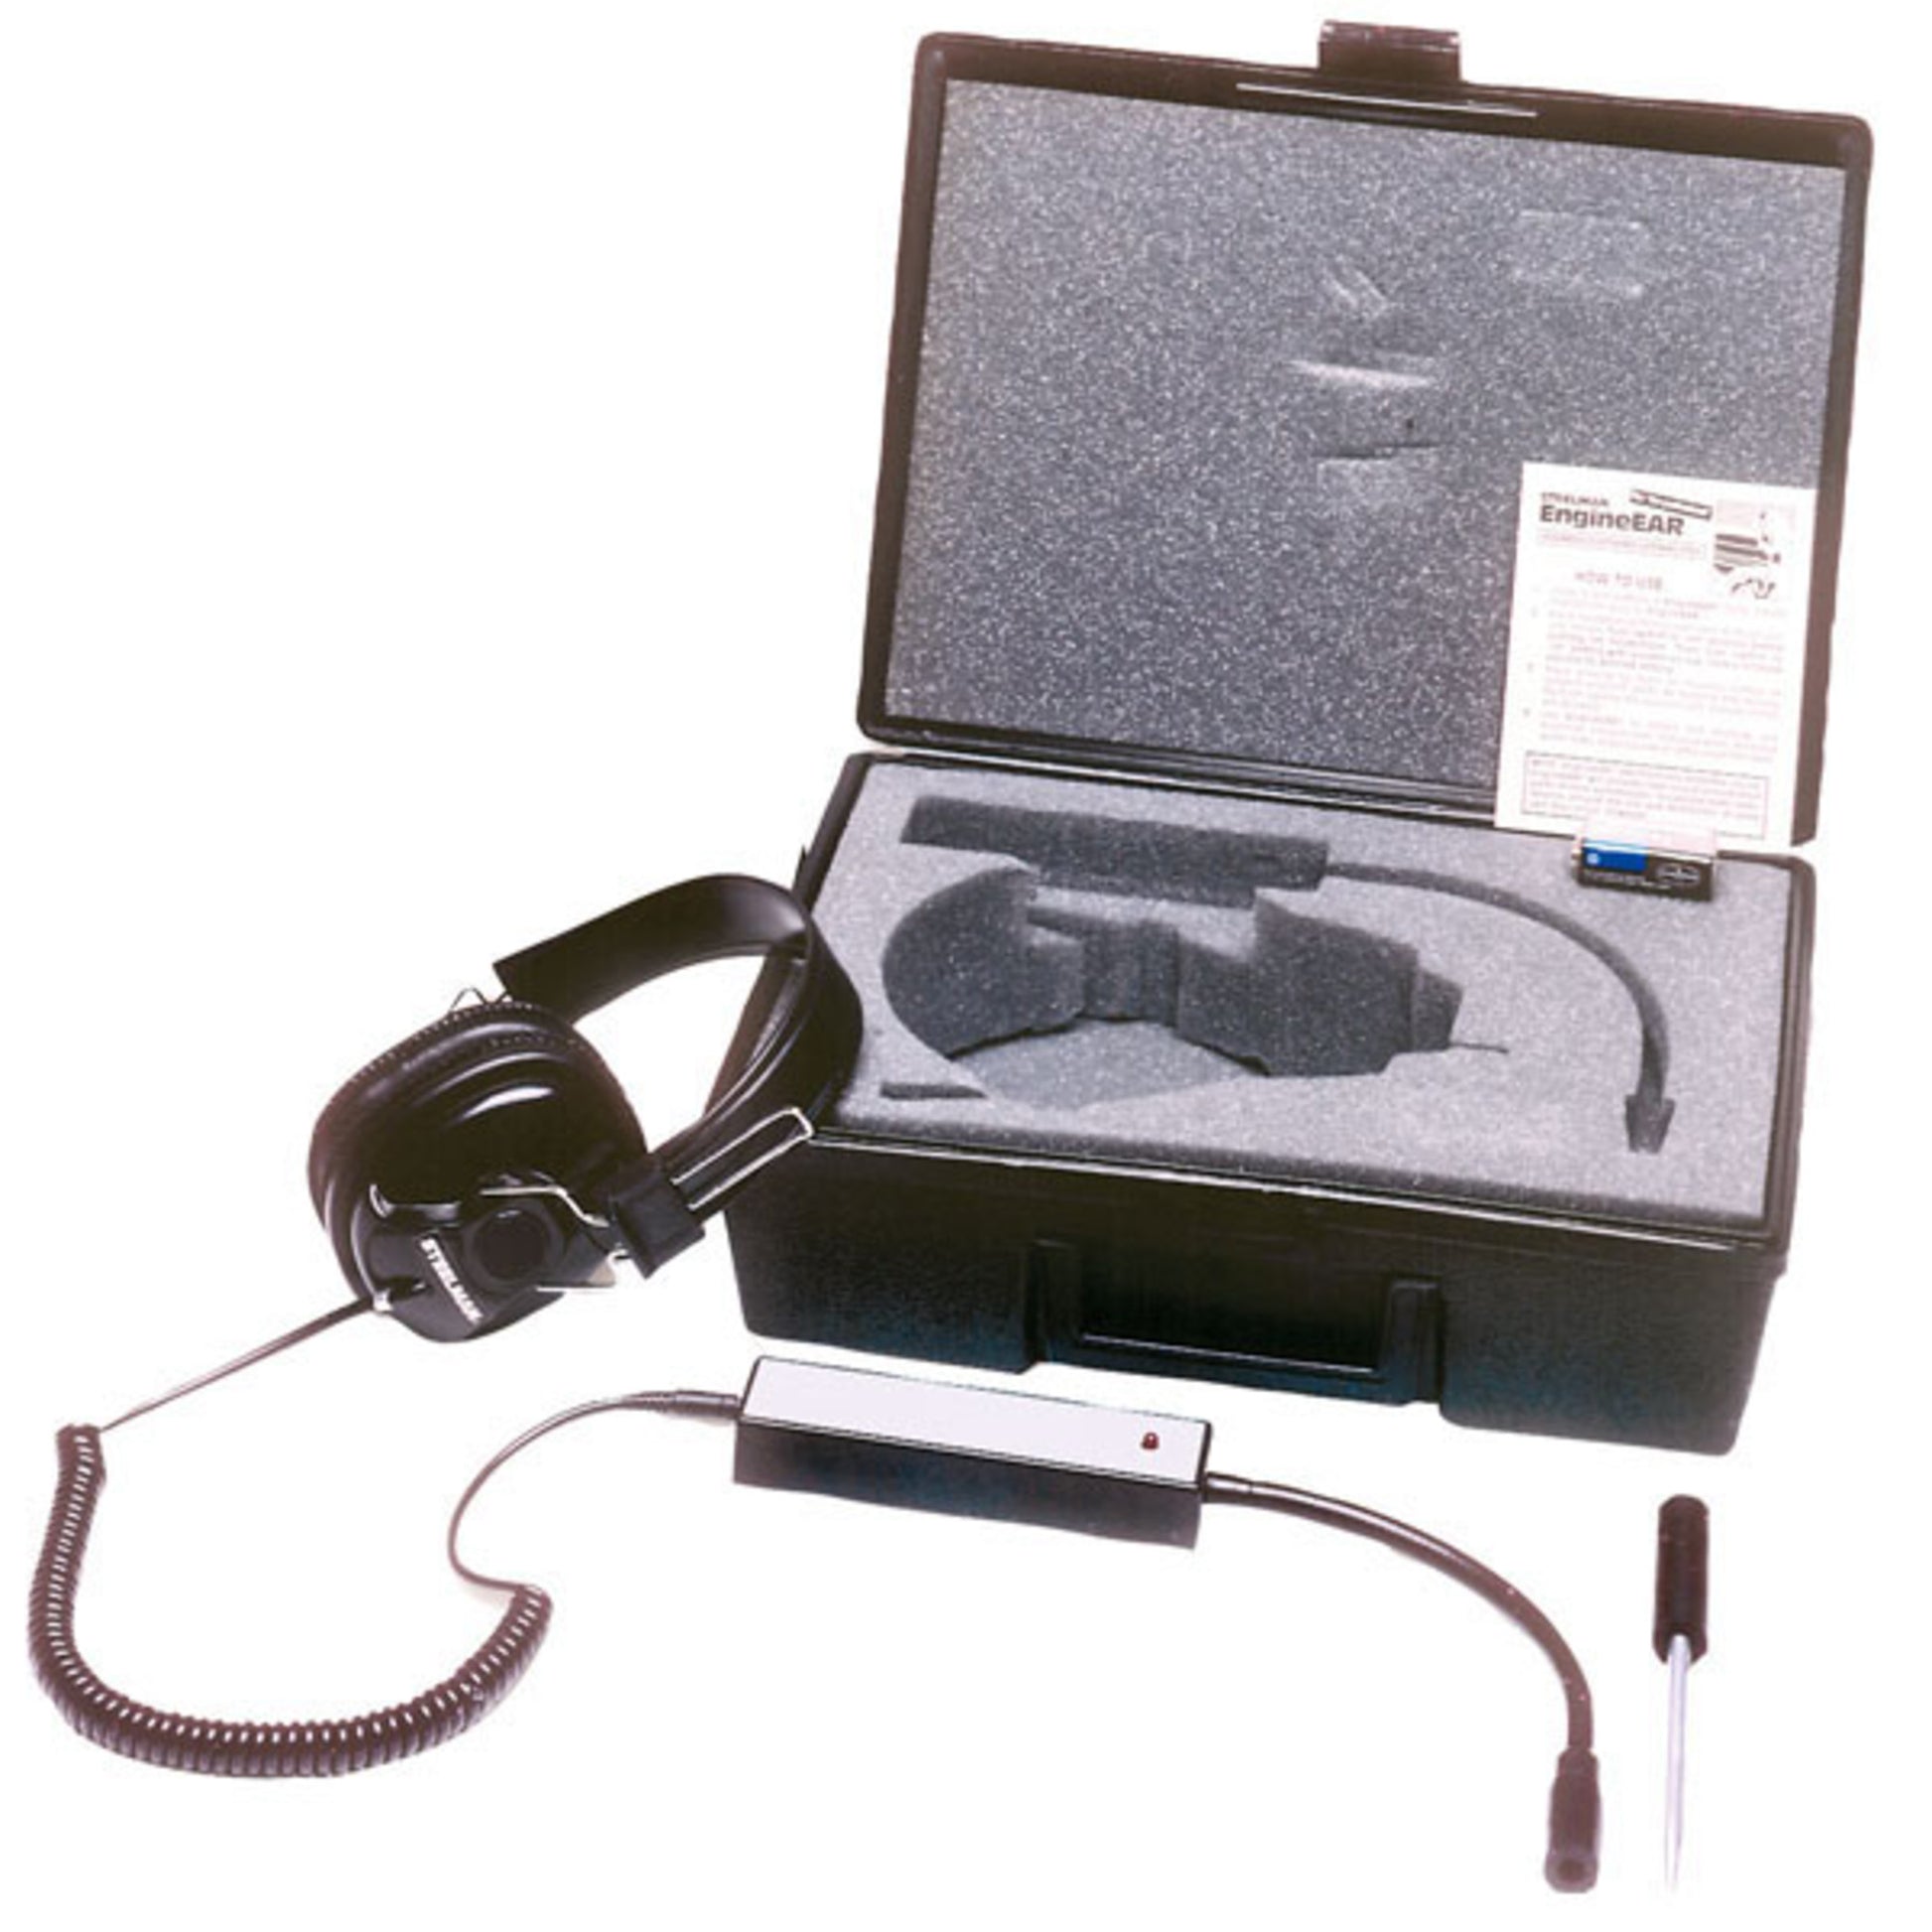 Steelman 65001 EngineEAR Electronic Stethoscope